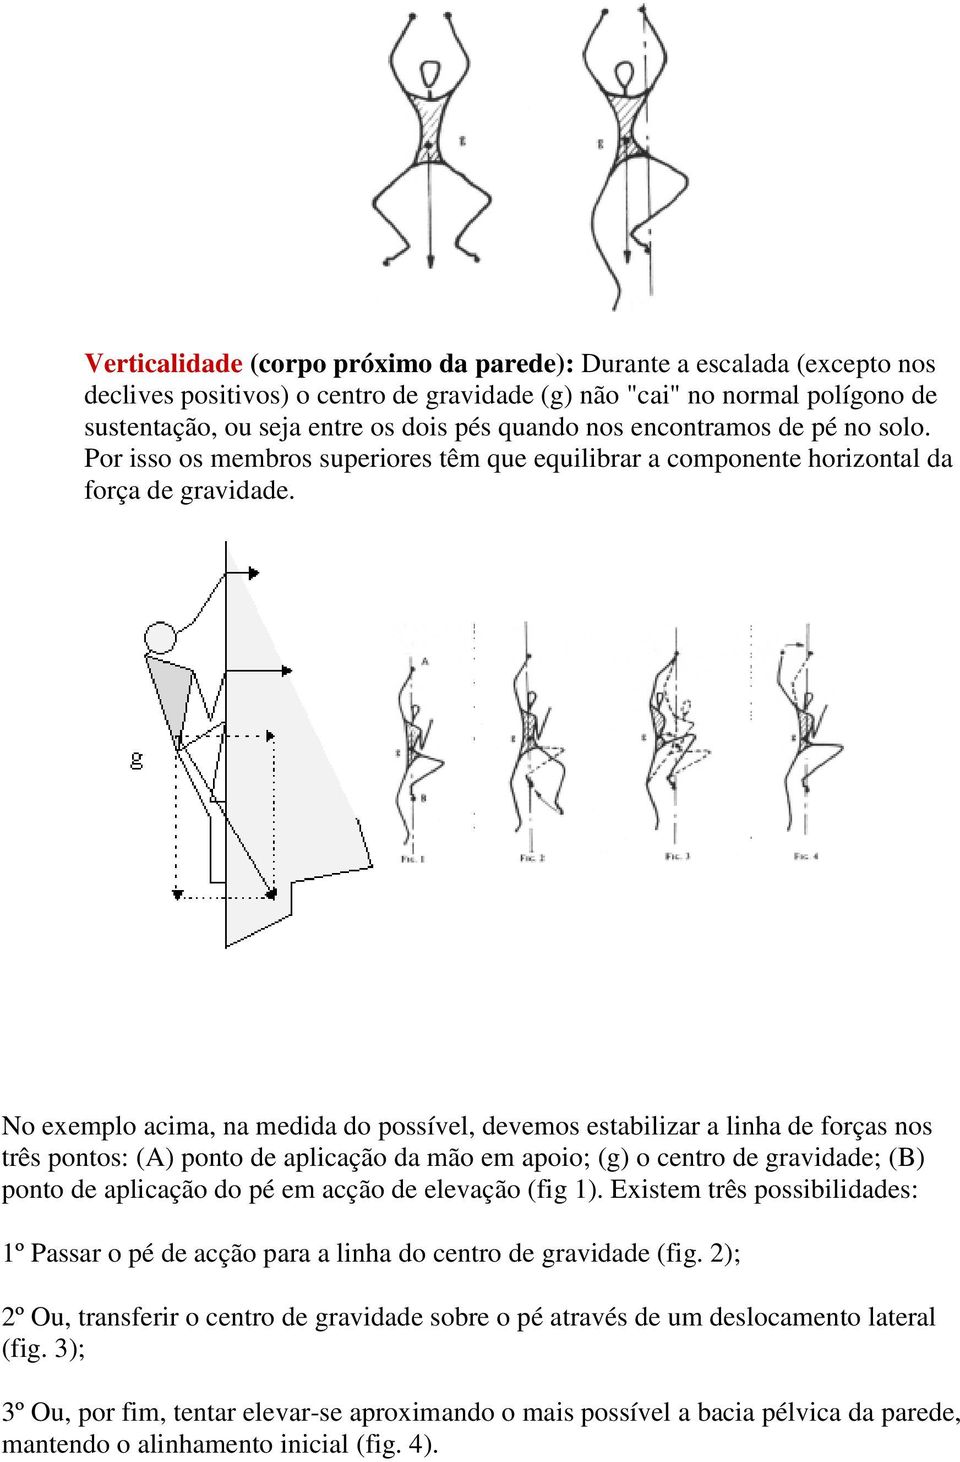 No exemplo acima, na medida do possível, devemos estabilizar a linha de forças nos três pontos: (A) ponto de aplicação da mão em apoio; (g) o centro de gravidade; (B) ponto de aplicação do pé em